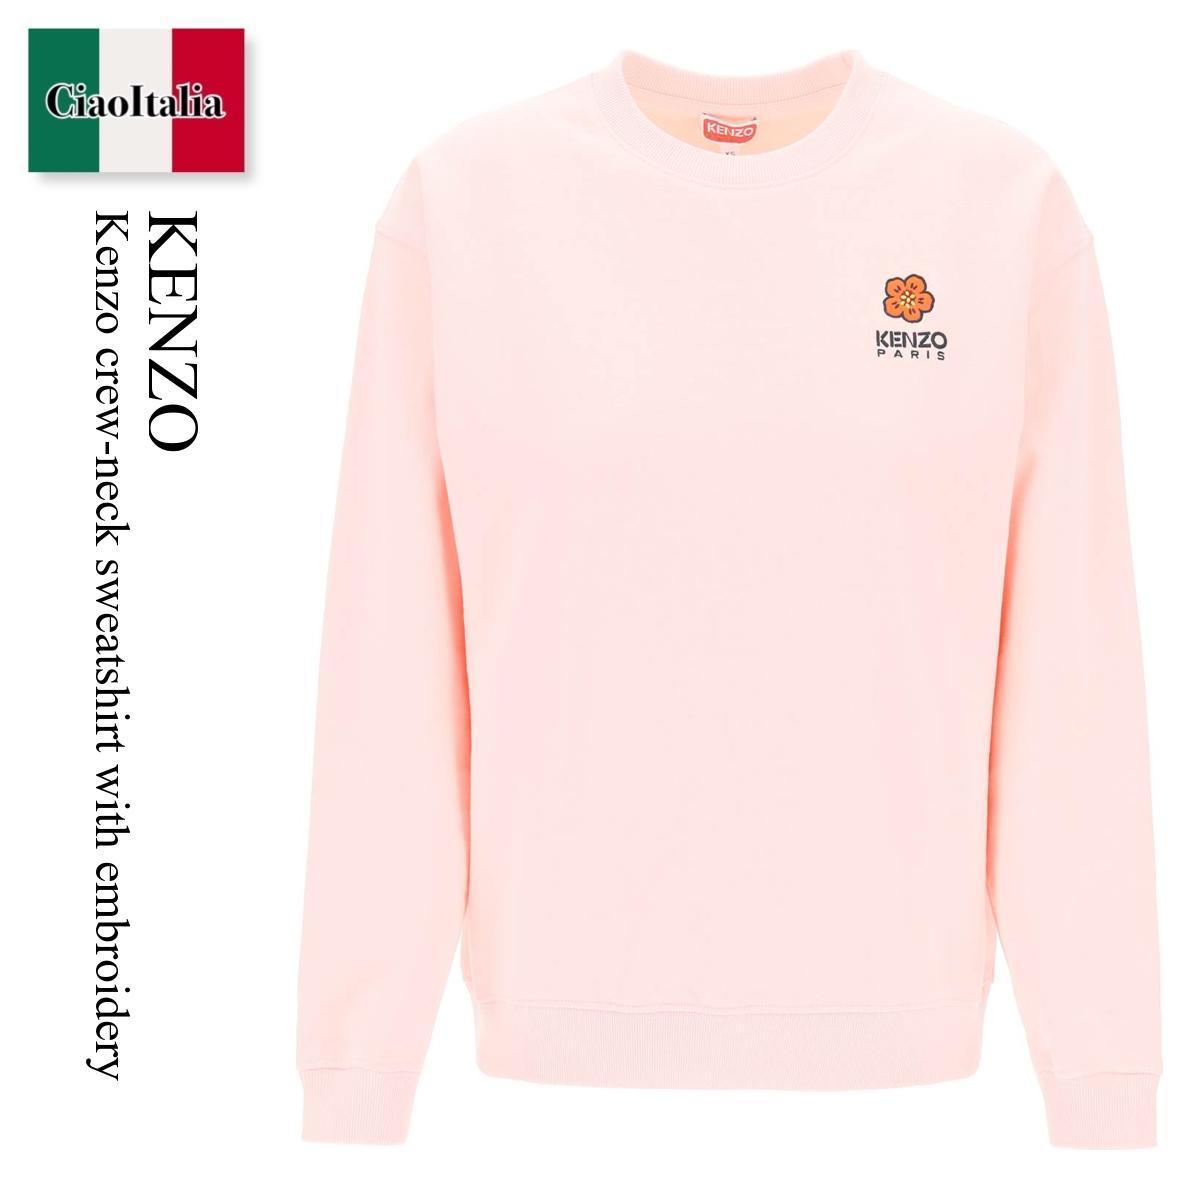 ケンゾー / Kenzo Crew-Neck Sweatshirt With Embroidery / FD52SW0404MF / FD52SW0404MF 34A / FD52SW0404MF34A / スウェット・トレーナー / 「正規品補償」「VIP価格販売」「お買い物サポート」